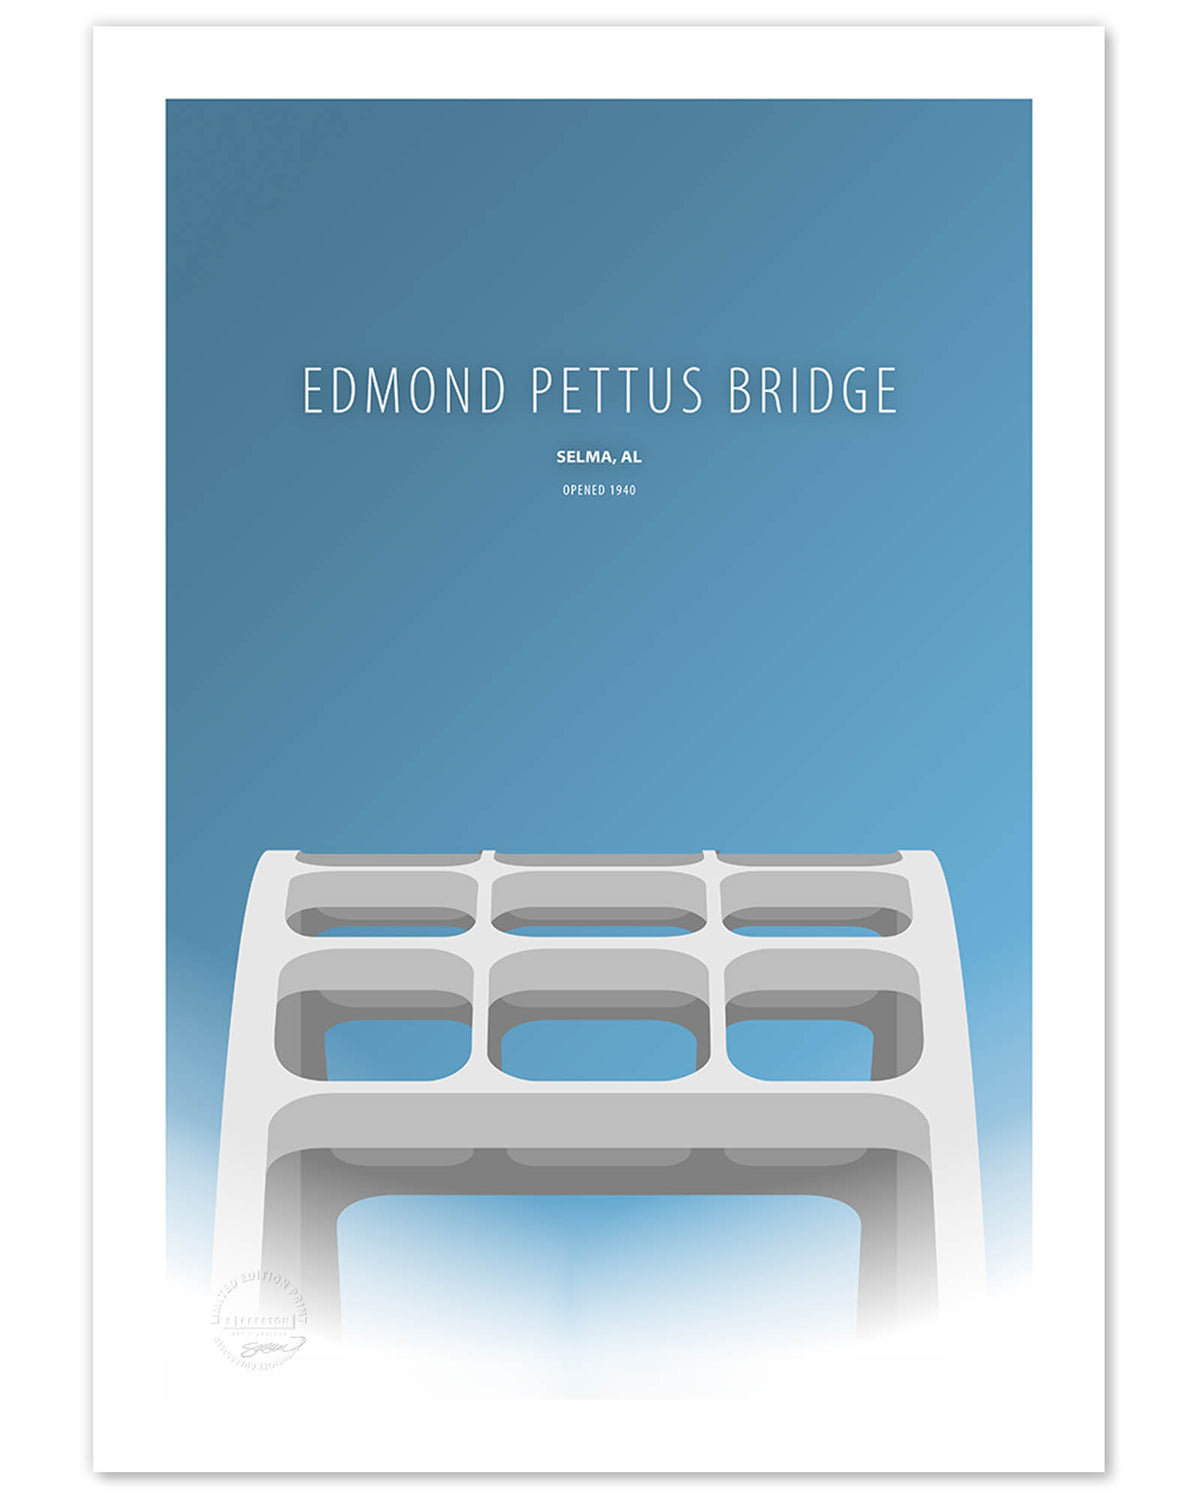 Edmond Pettus Bridge - Selma